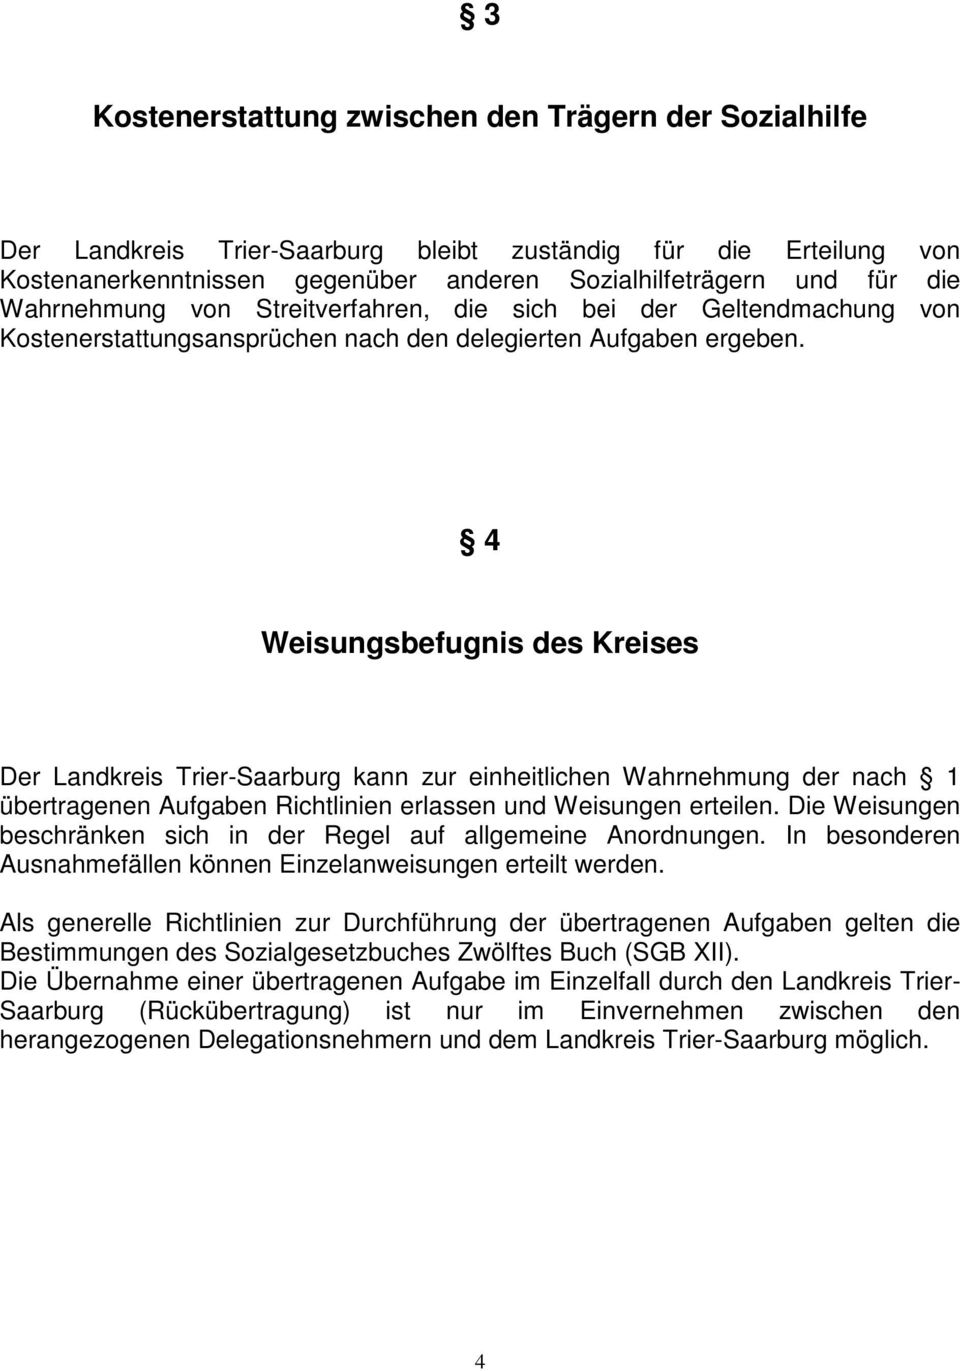 4 Weisungsbefugnis des Kreises Der Landkreis Trier-Saarburg kann zur einheitlichen Wahrnehmung der nach 1 übertragenen Aufgaben Richtlinien erlassen und Weisungen erteilen.